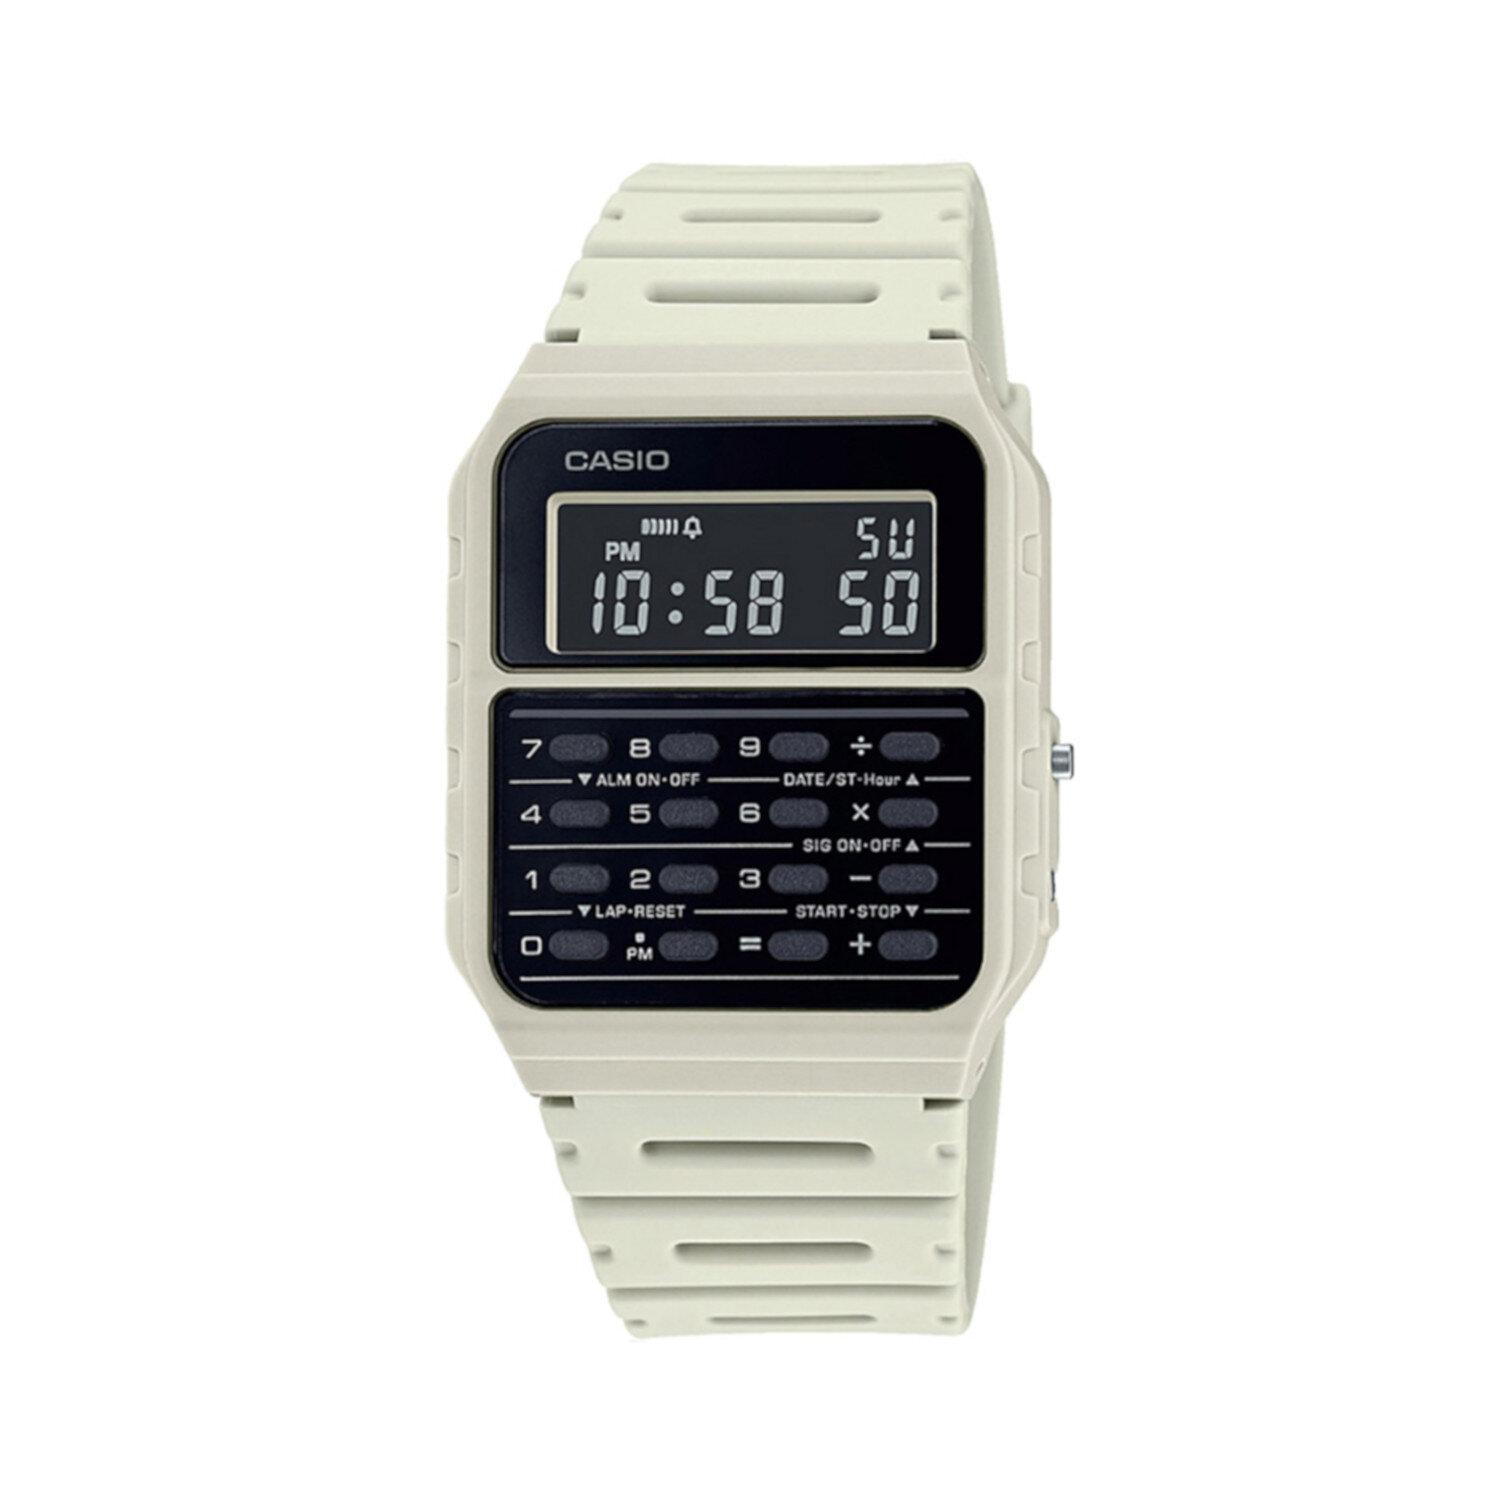 Reloj para hombre Casio Ca-53w-8b Vintage Alarma Calculadora hora dual